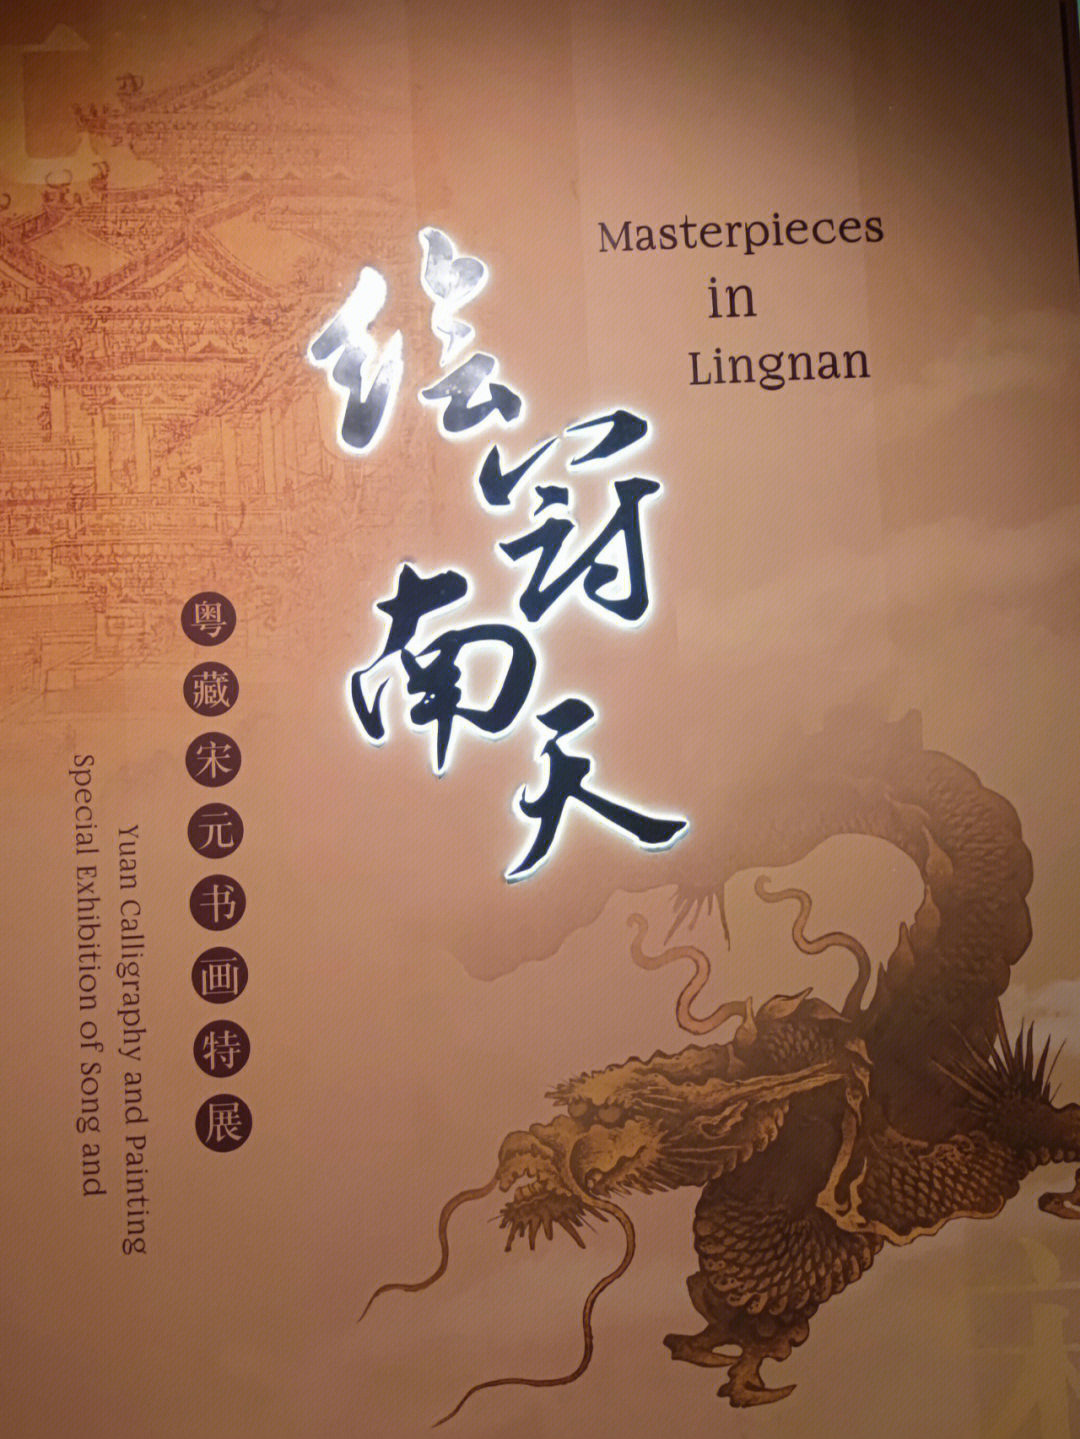 广东省博物馆镇馆之宝——陈容的《墨龙图》,真的值得一看!